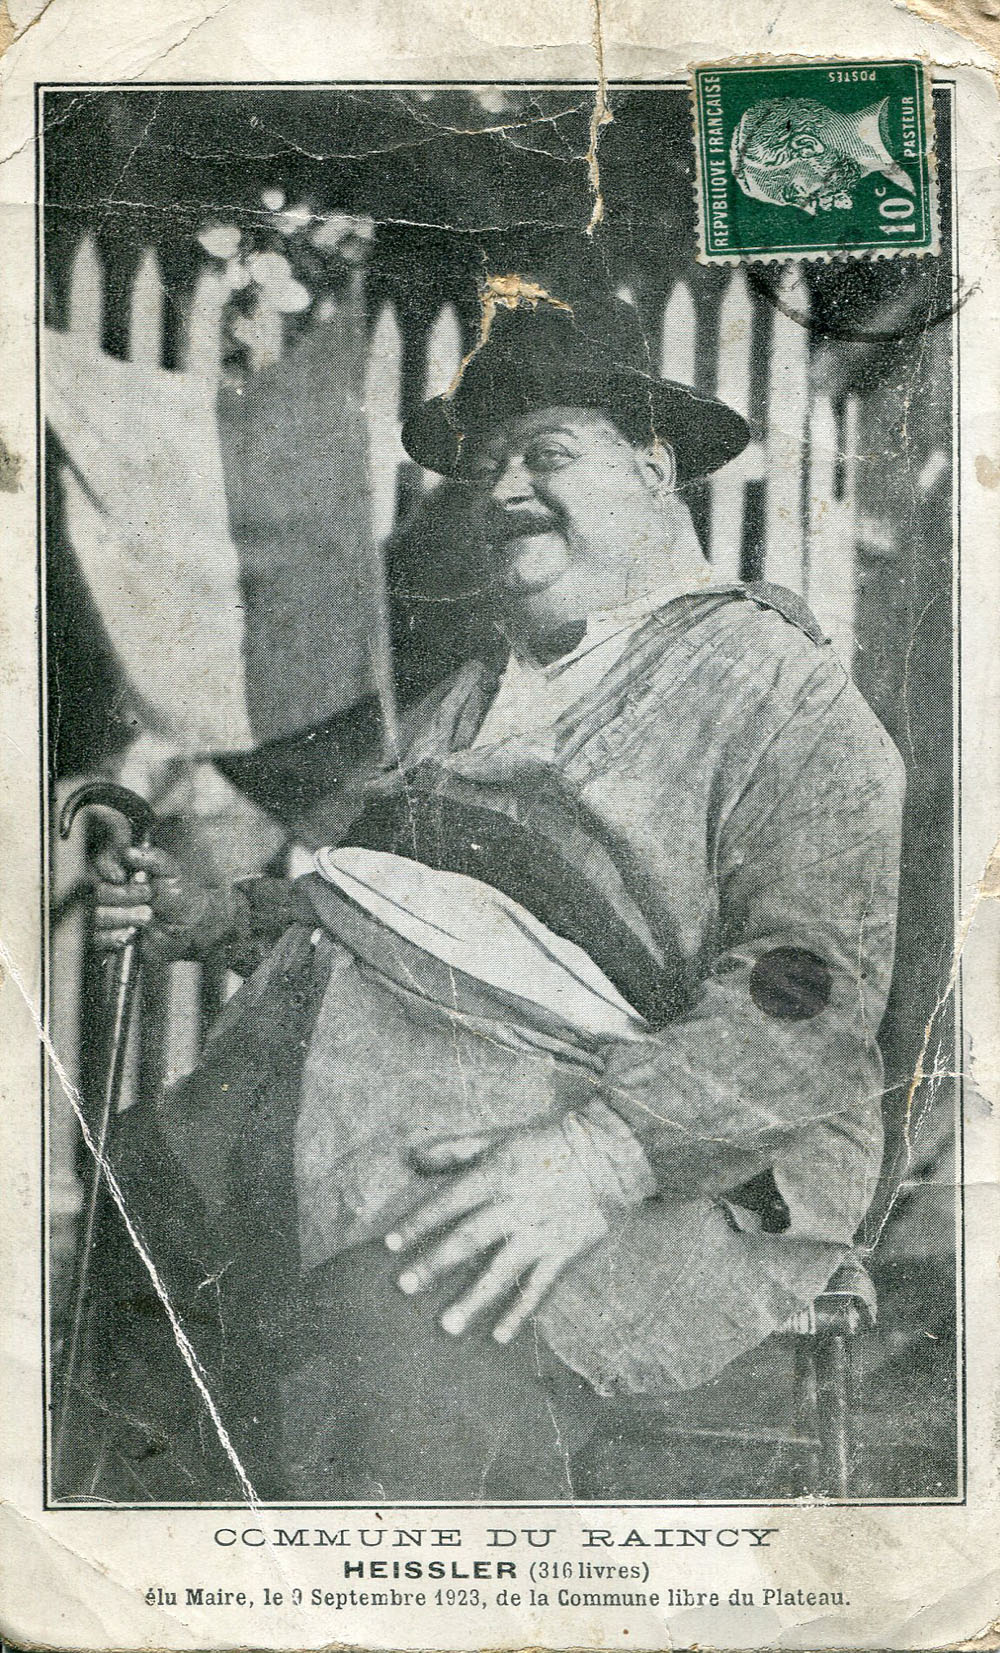 Le Raincy - Heissler, élu Maire, le 9 septembre 1923, de la Commune Libre du Plateau du Raincy